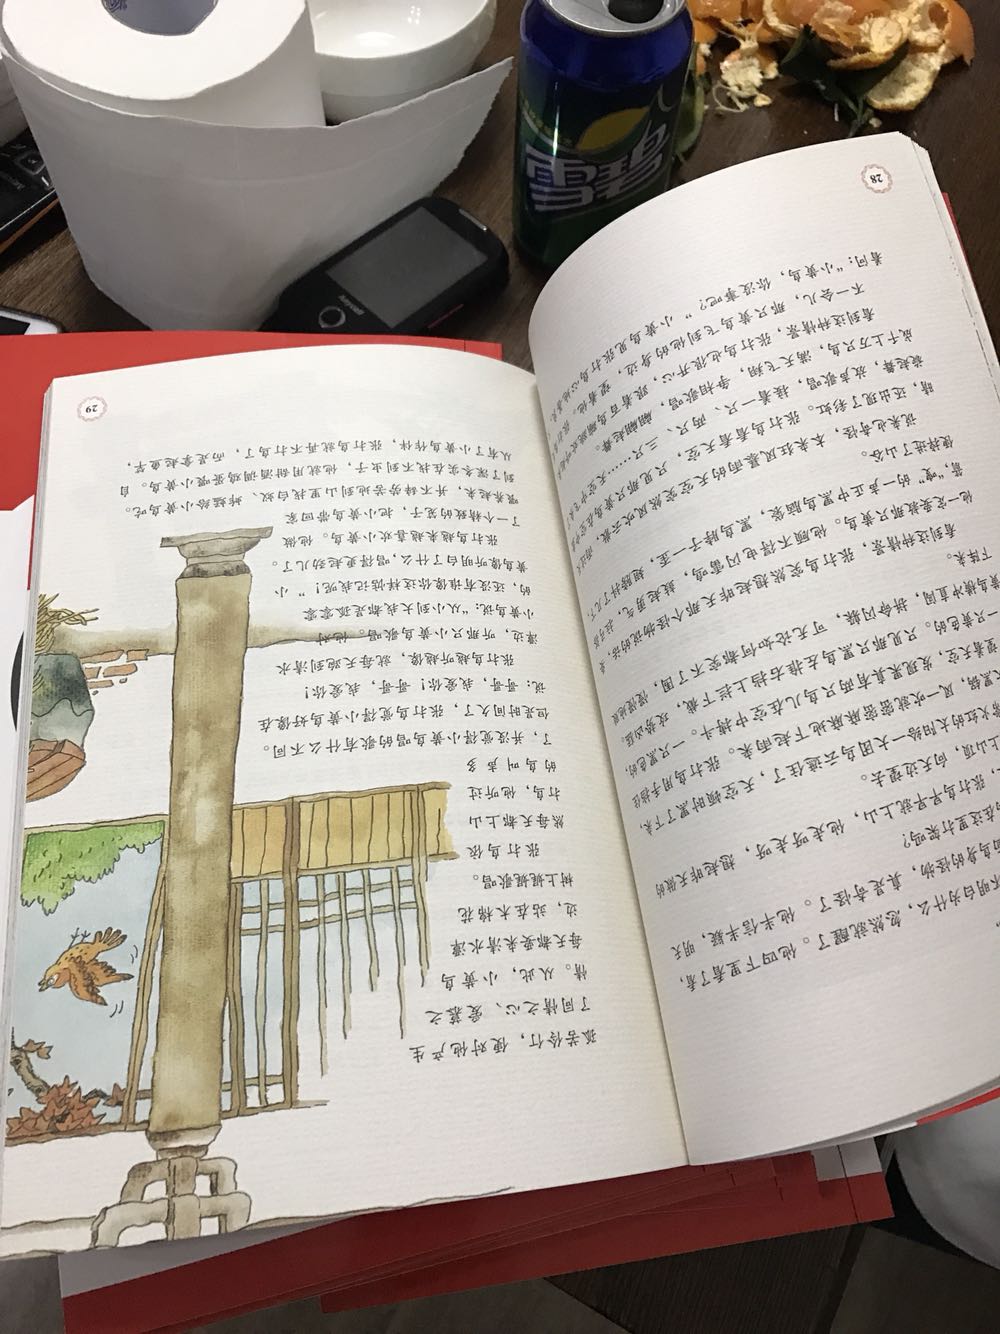 纸张不错， ，搞活动入手非常划算。书中语言亲切。配图一般吧，我不太喜欢这个风格的配图。